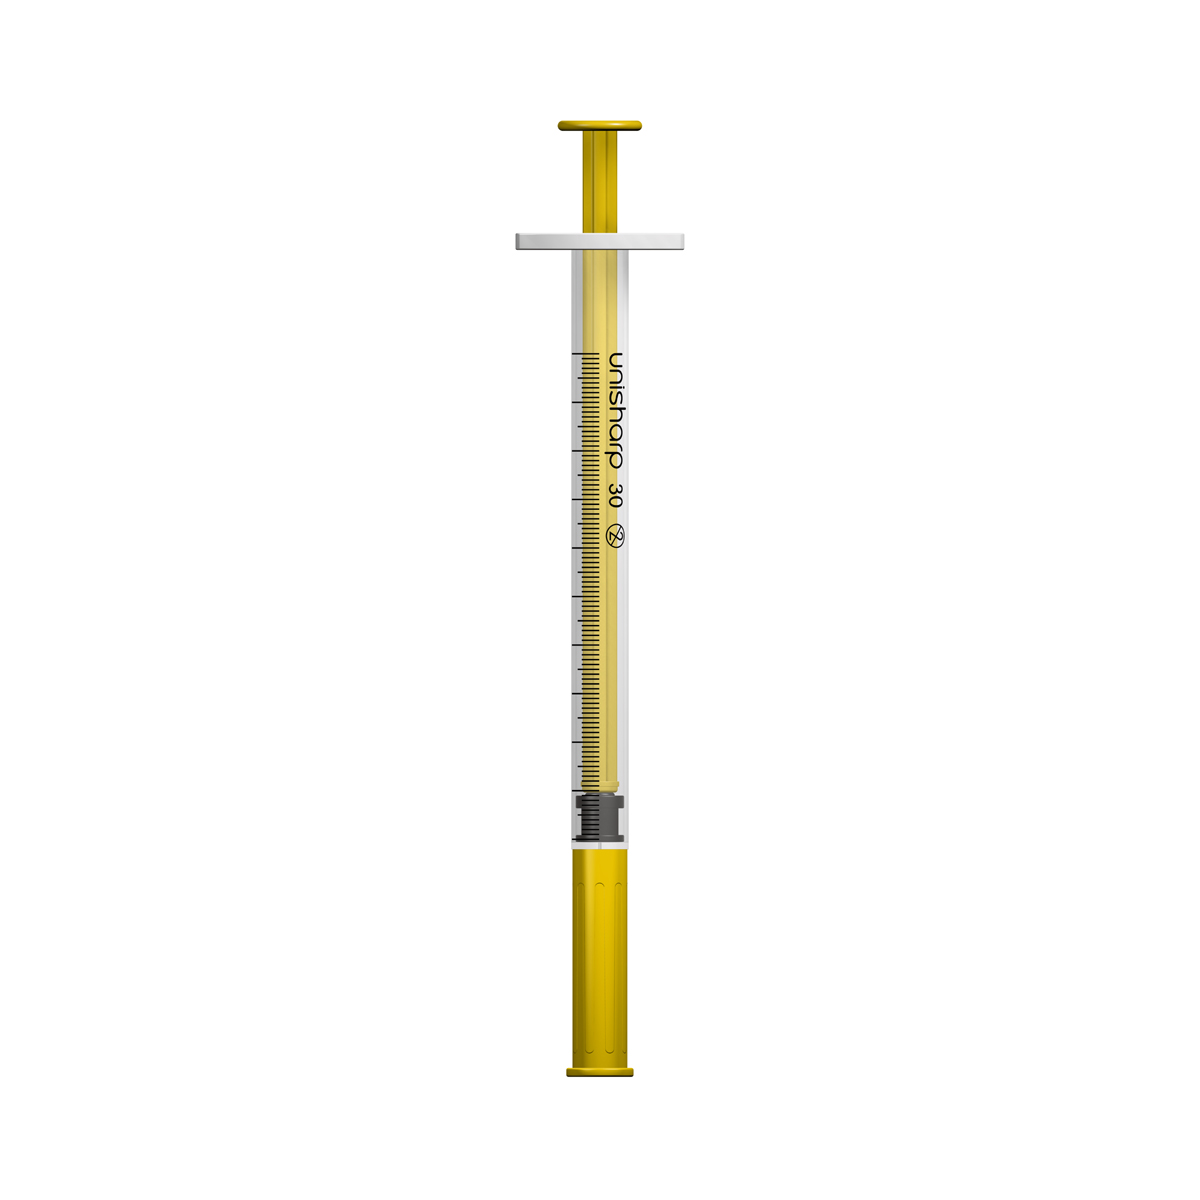 Unisharp 1ml 30G fixed needle syringe: gold